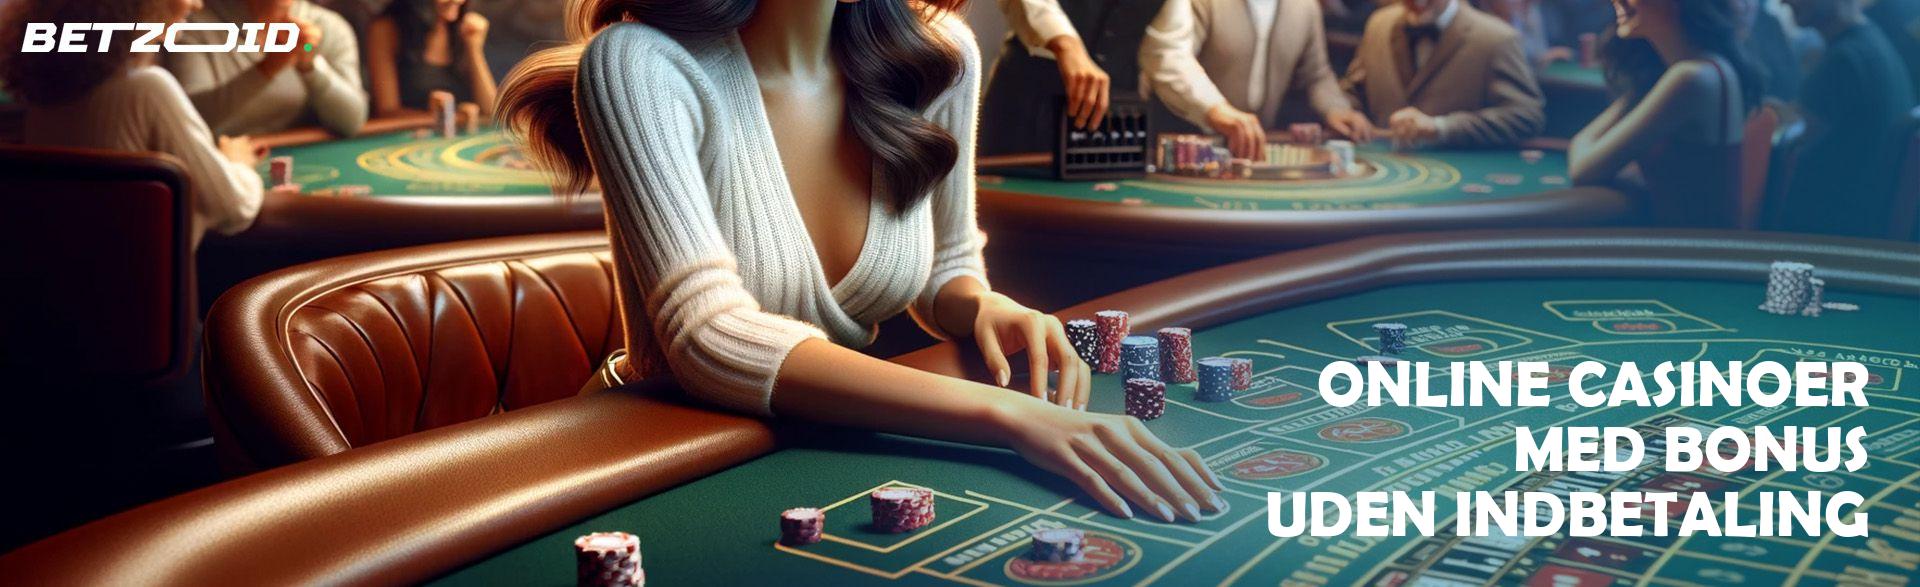 Online Casinoer med Bonus uden Indbetaling.